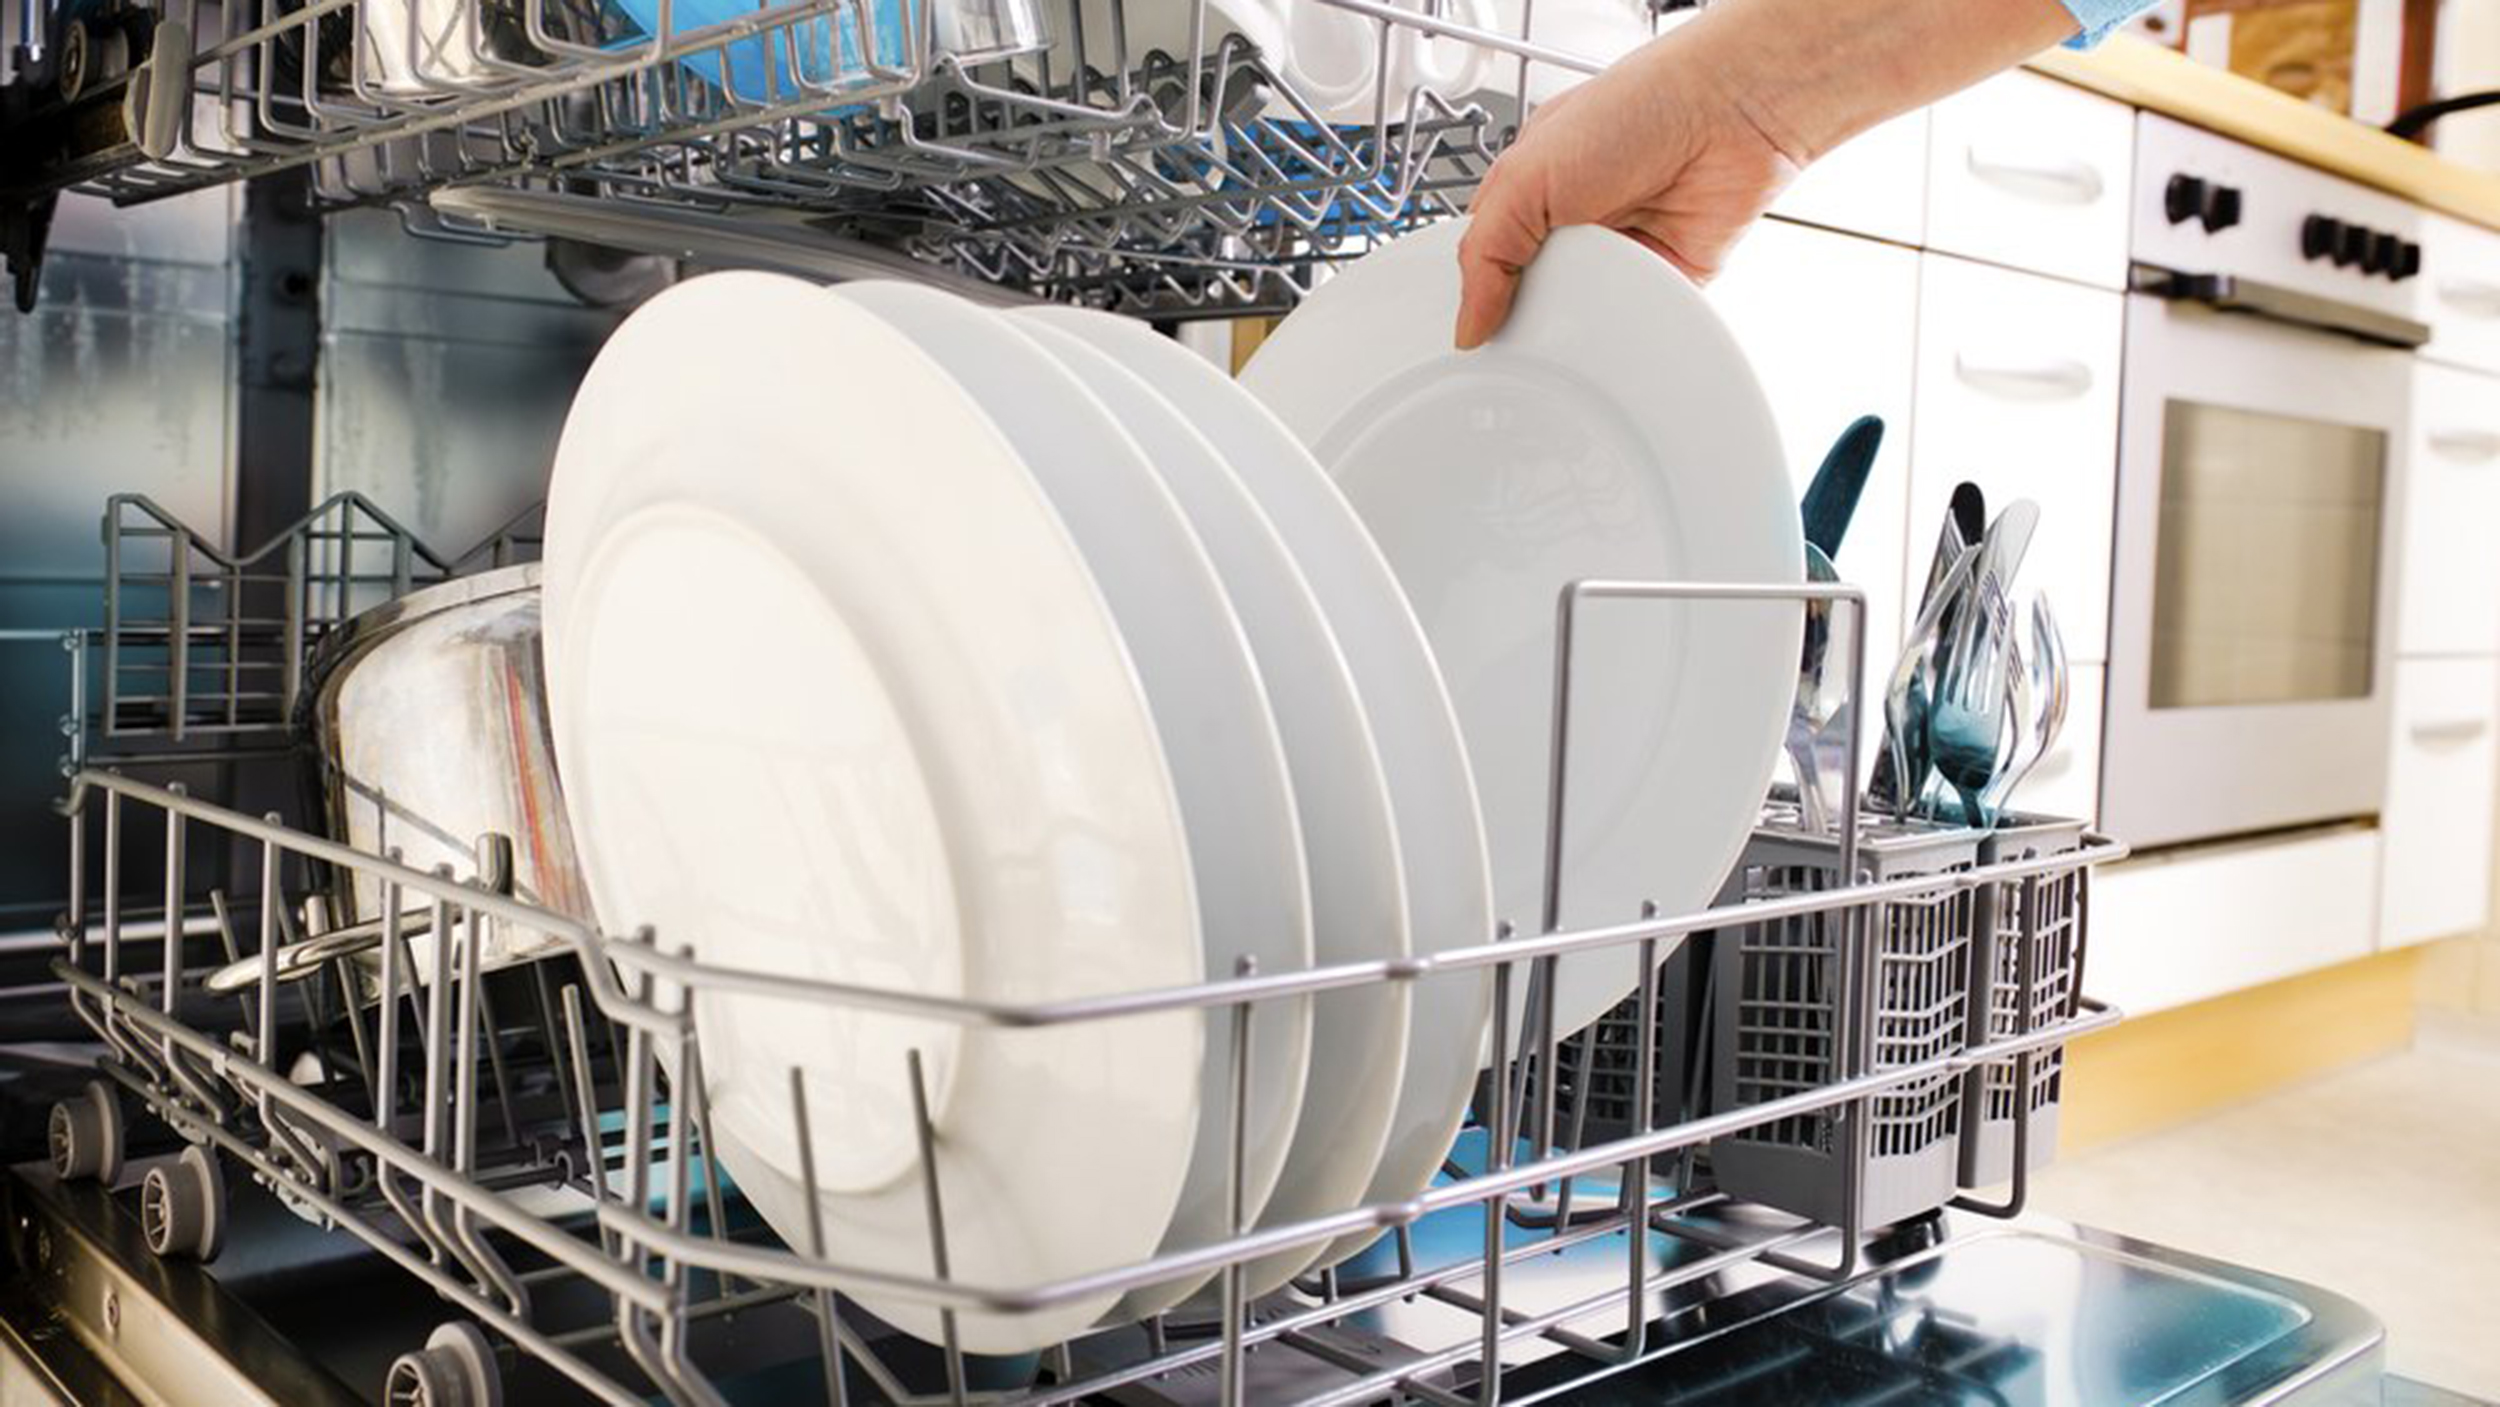 Cách làm đơn giản và nhanh chóng giúp máy rửa bát luôn sạch đẹp như mới - Ảnh 1.